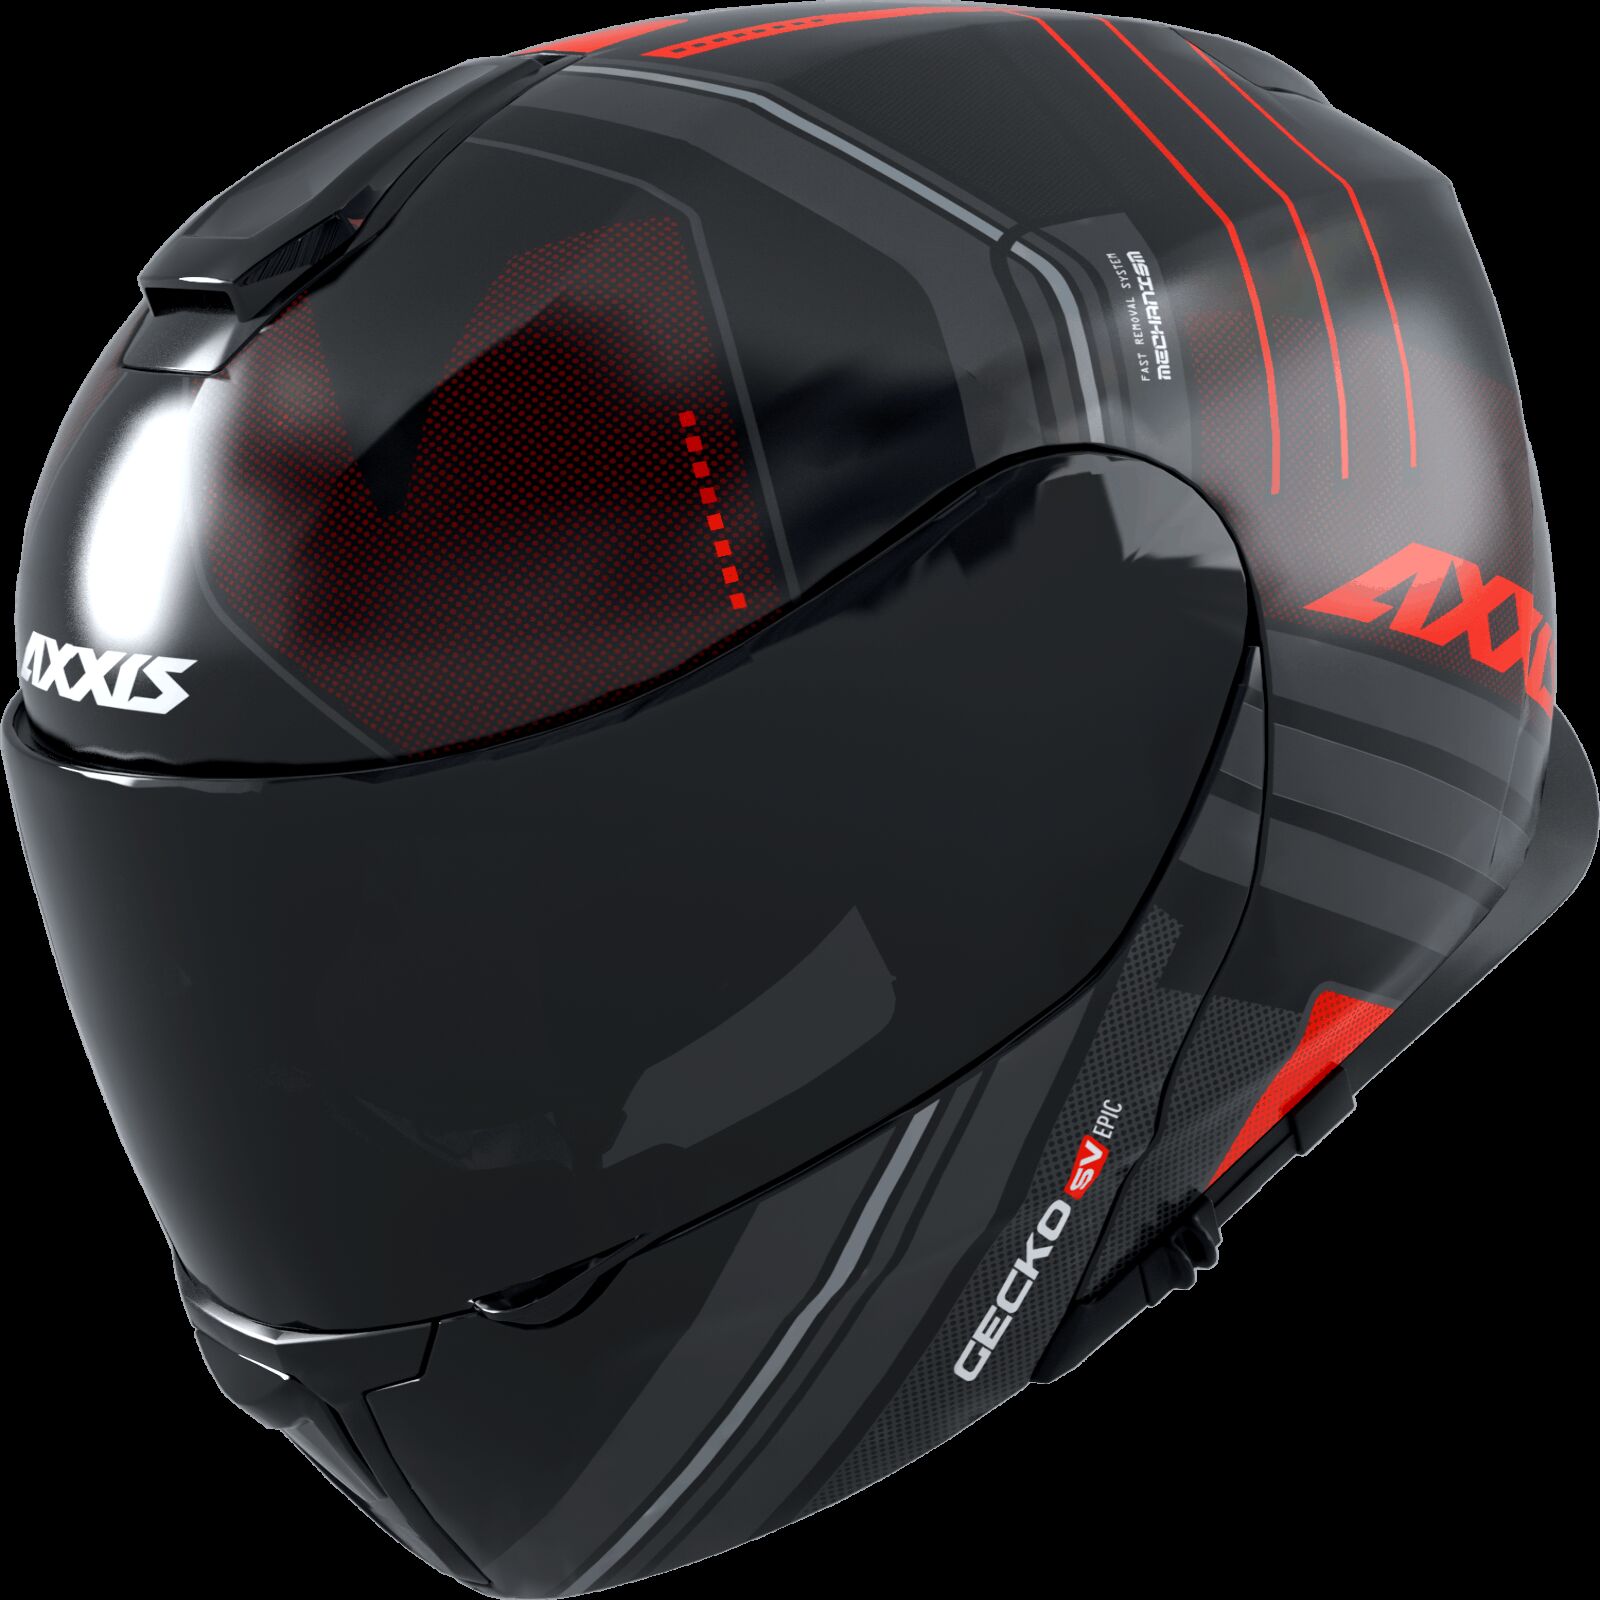 Obrázek produktu Výklopná helma AXXIS GECKO SV ABS epic b5 matná fluor červená XS 42627311533